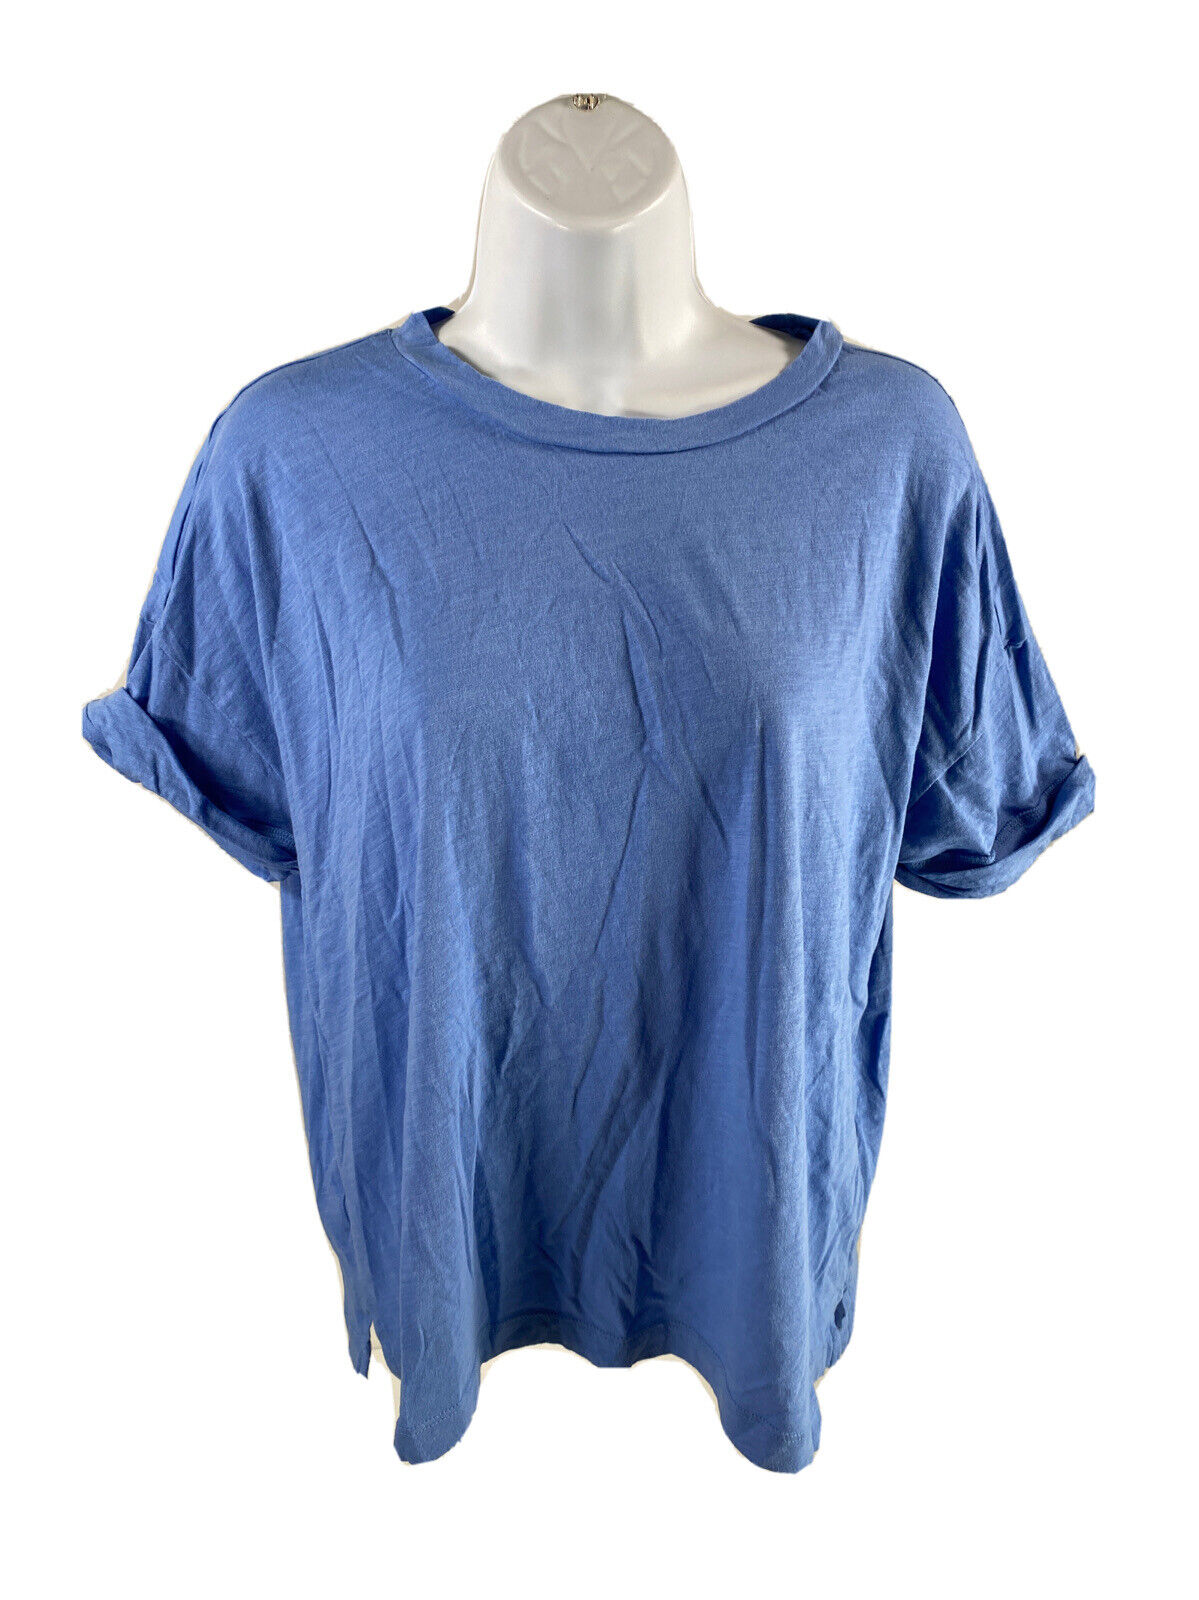 LOFT Women's Solid Blue Short Sleeve T-Shirt - L